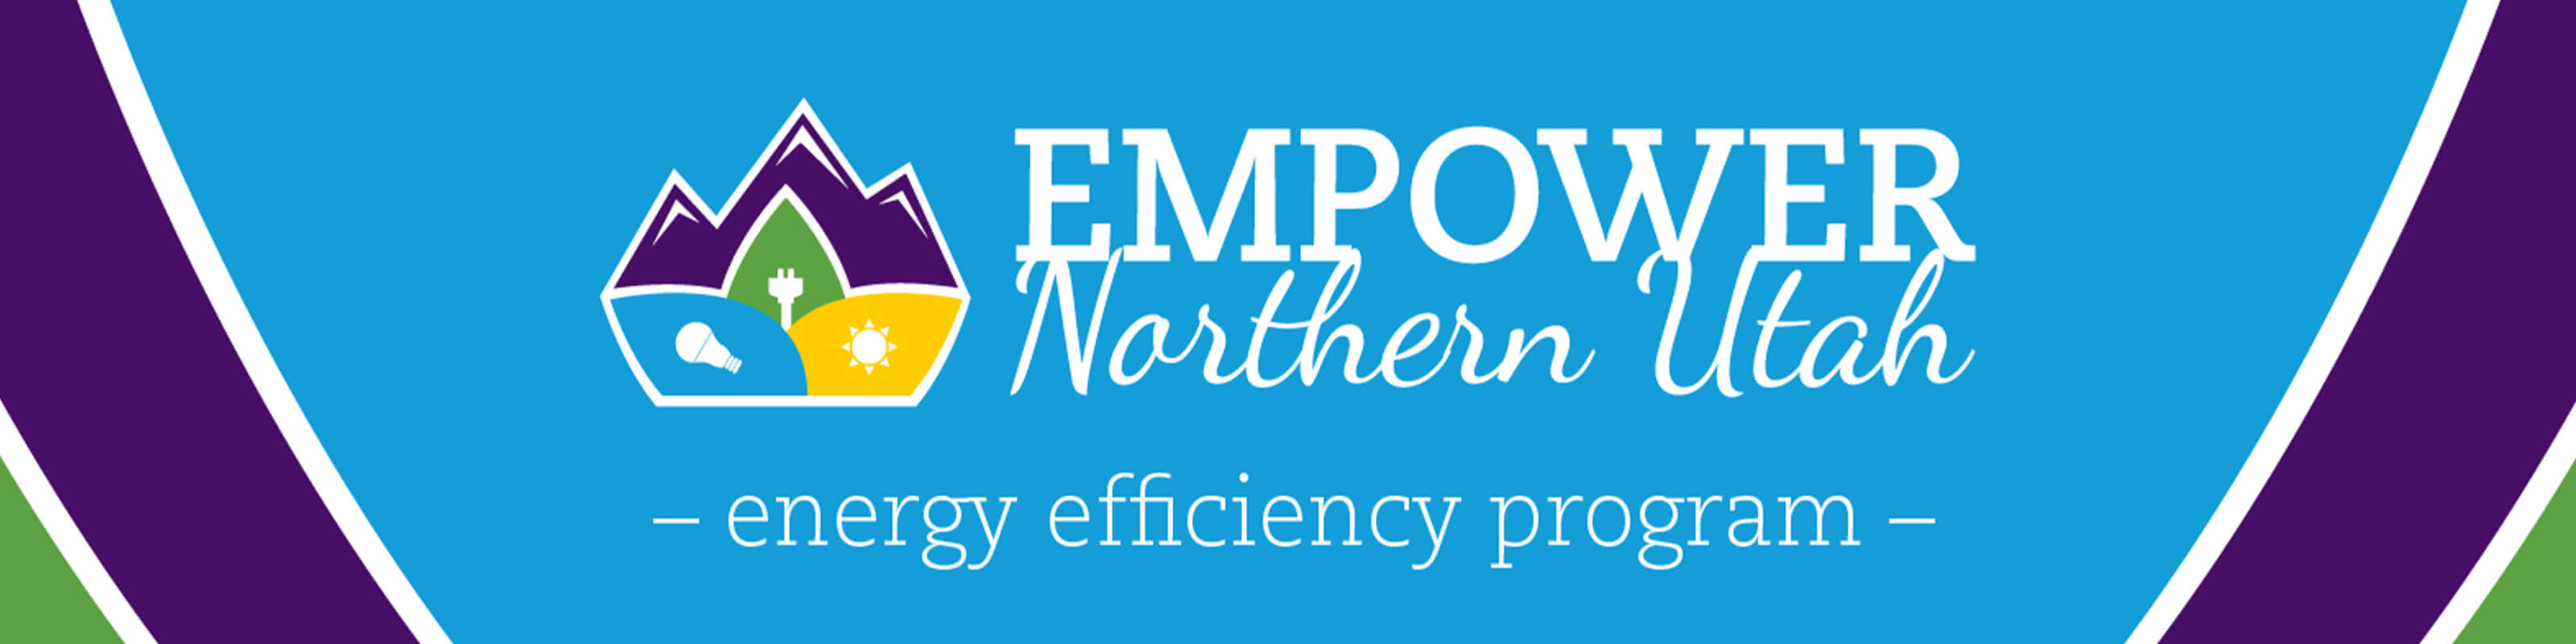 Empower Northern Utah - Energy Efficiency Program